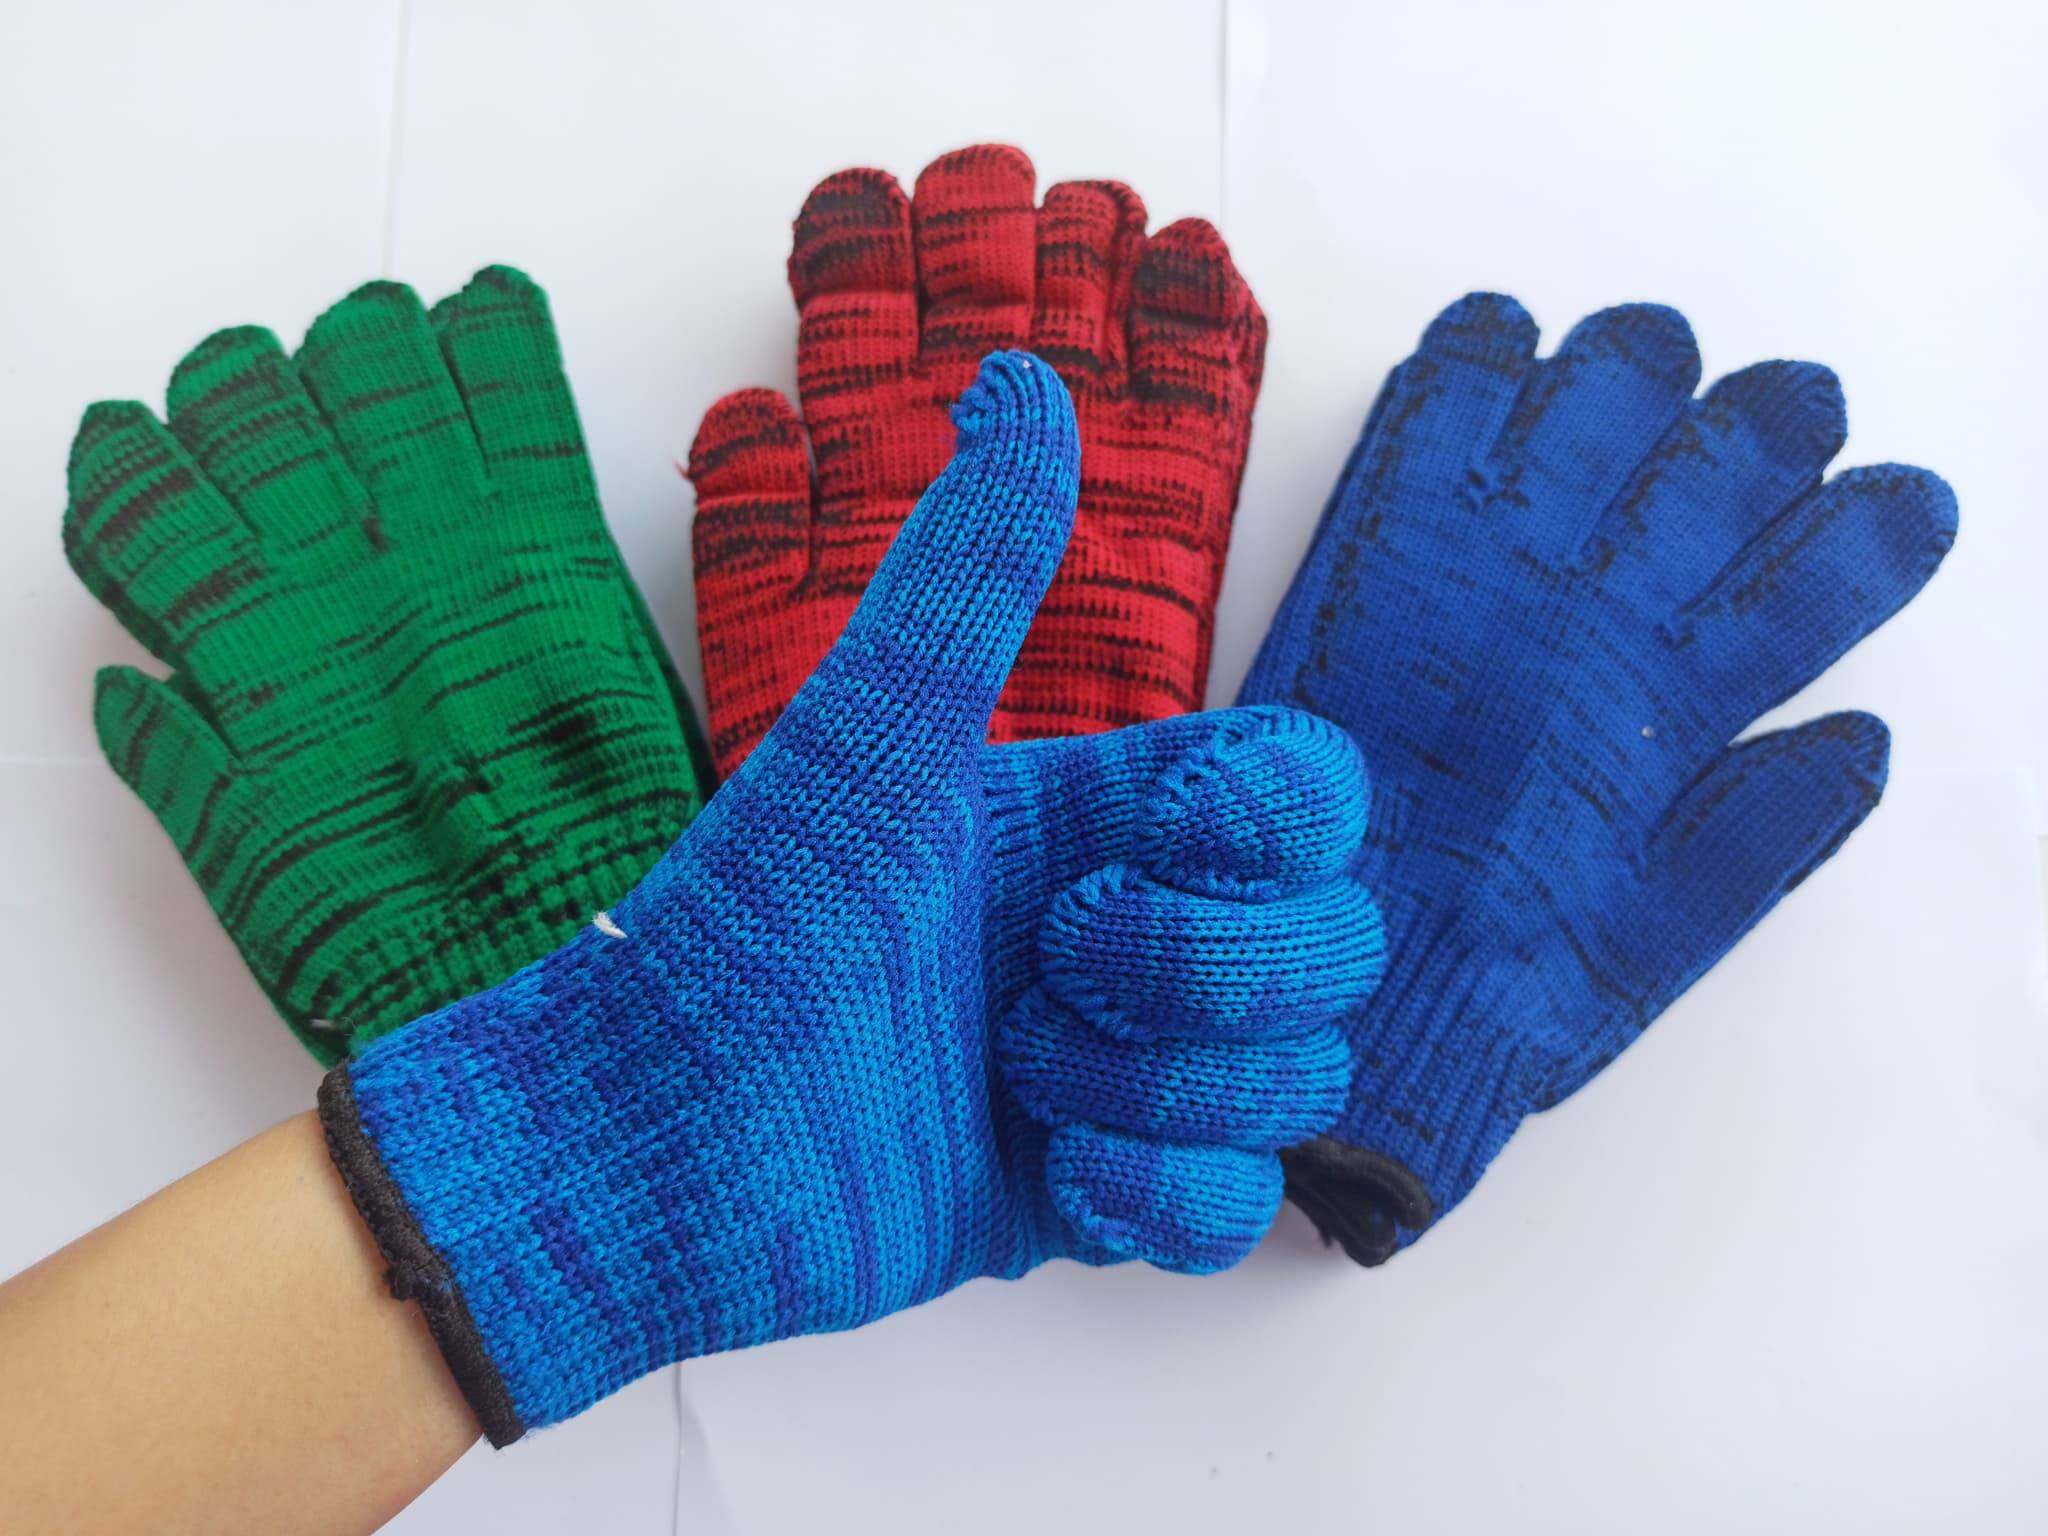 ถุงมือ ถุงมือผ้ามี4สี คละสี แพ็ค6คู่และ12คู่ ถุงมือช่าง ถุงมือการเกษตร ถุงมือผ้าเอนกประสงค์